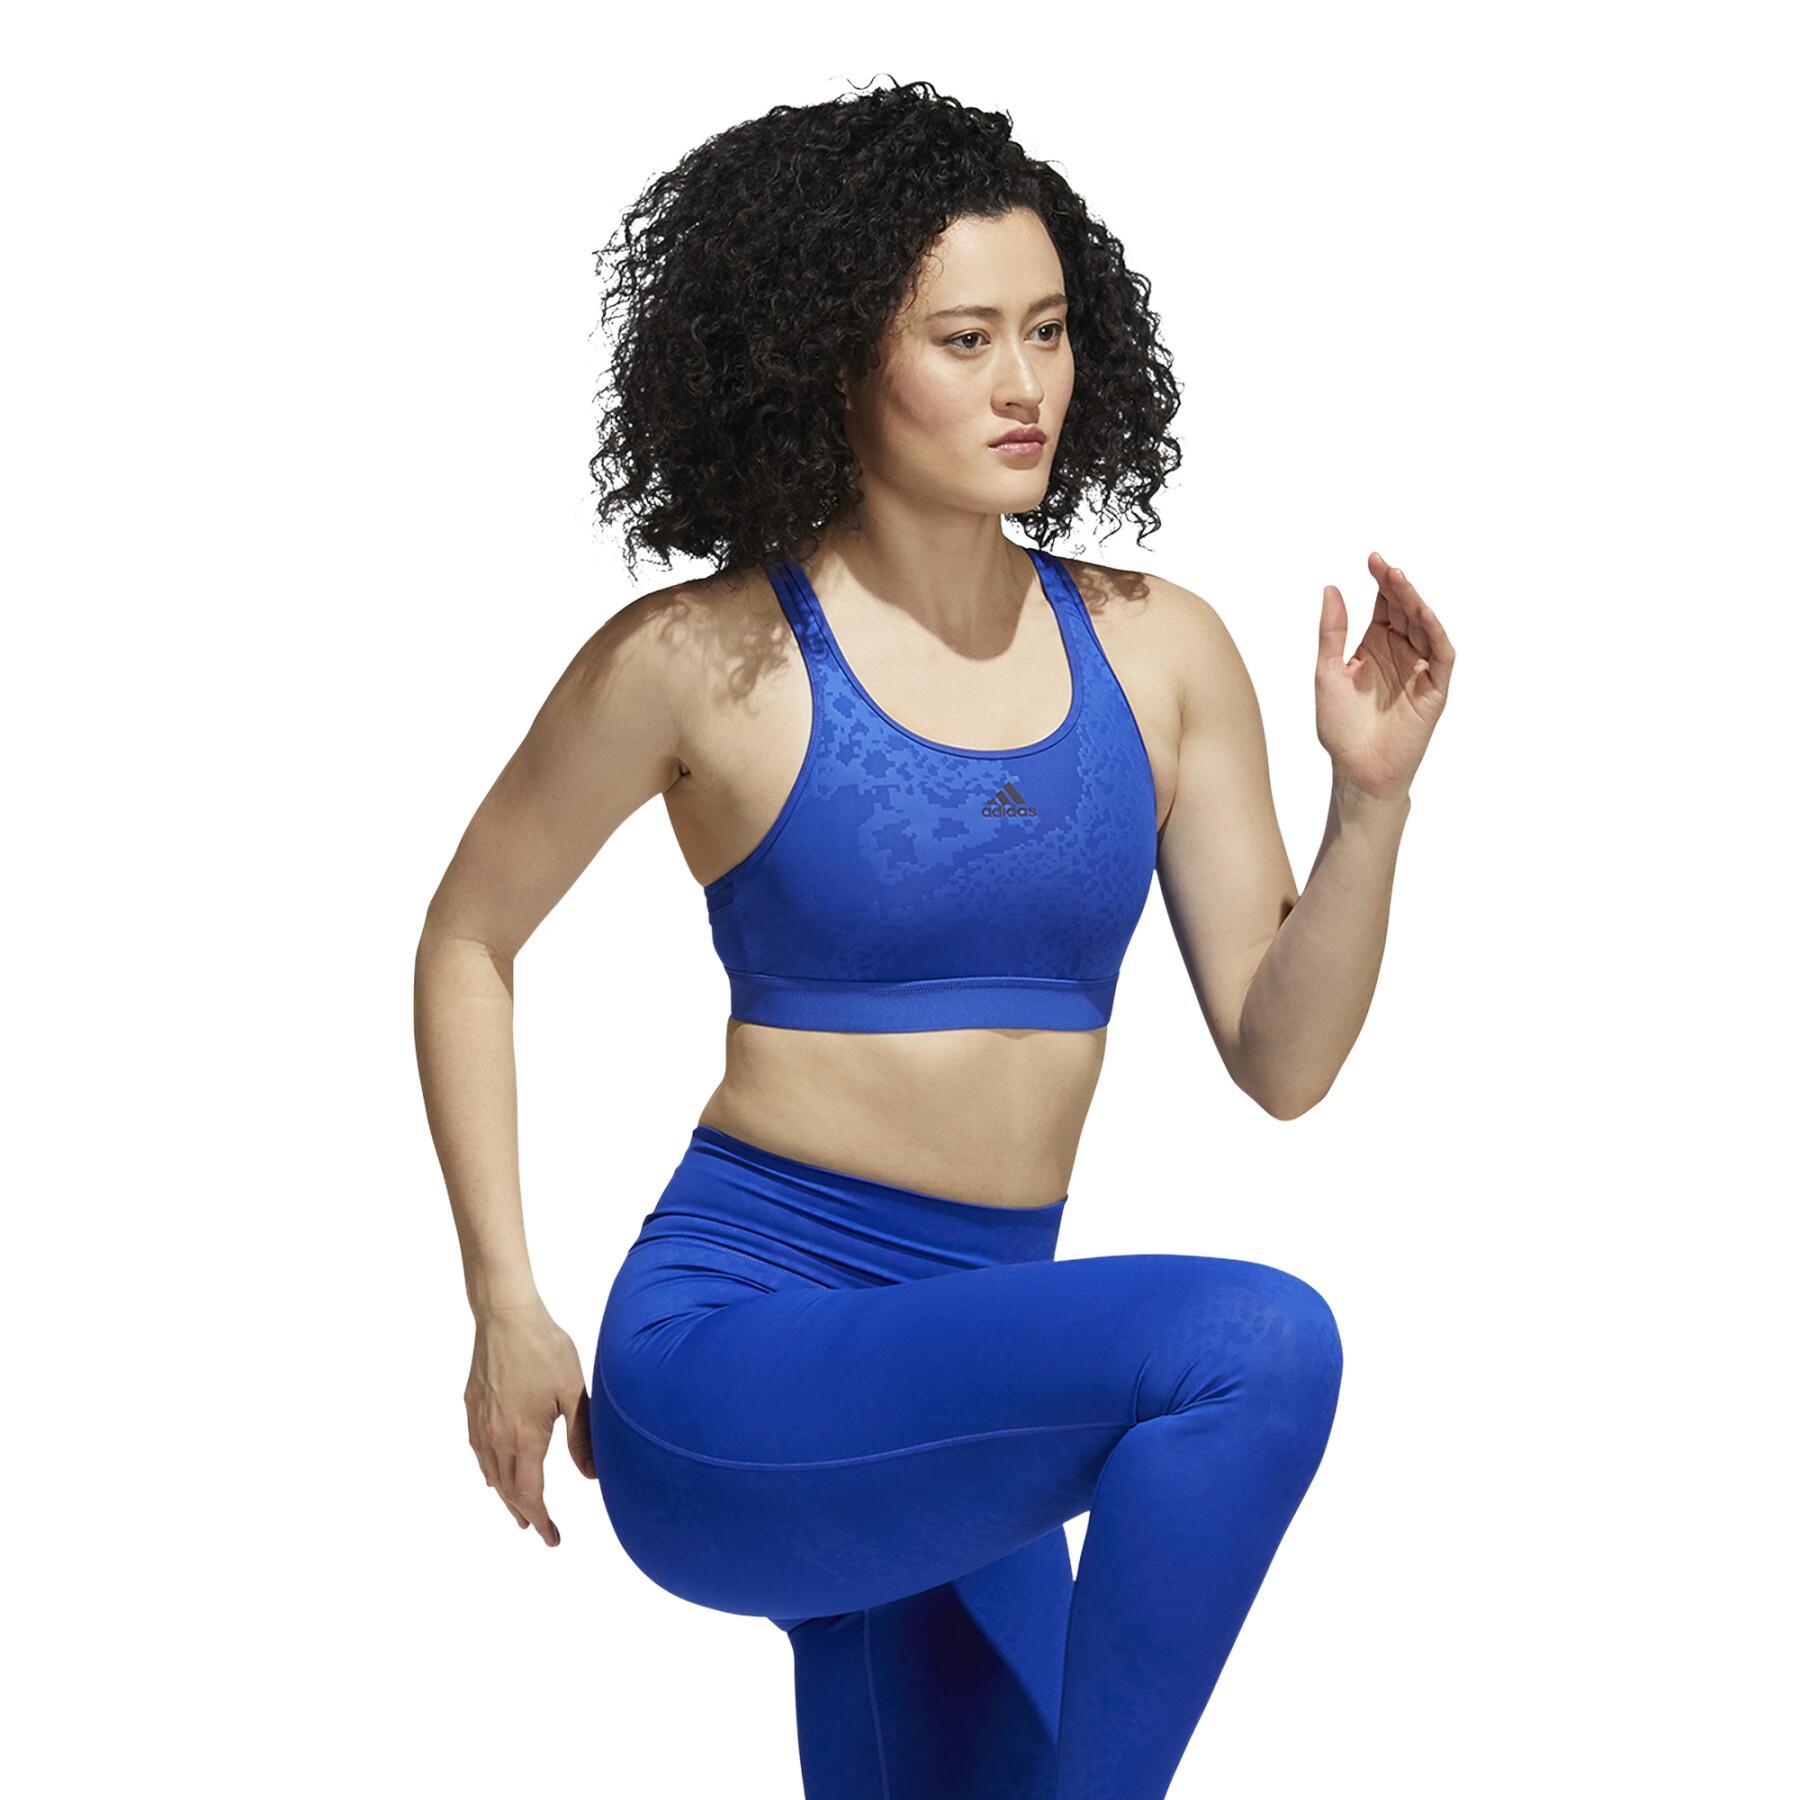 BH für Frauen adidas Believe This Medium-Support Lace Camo Workout